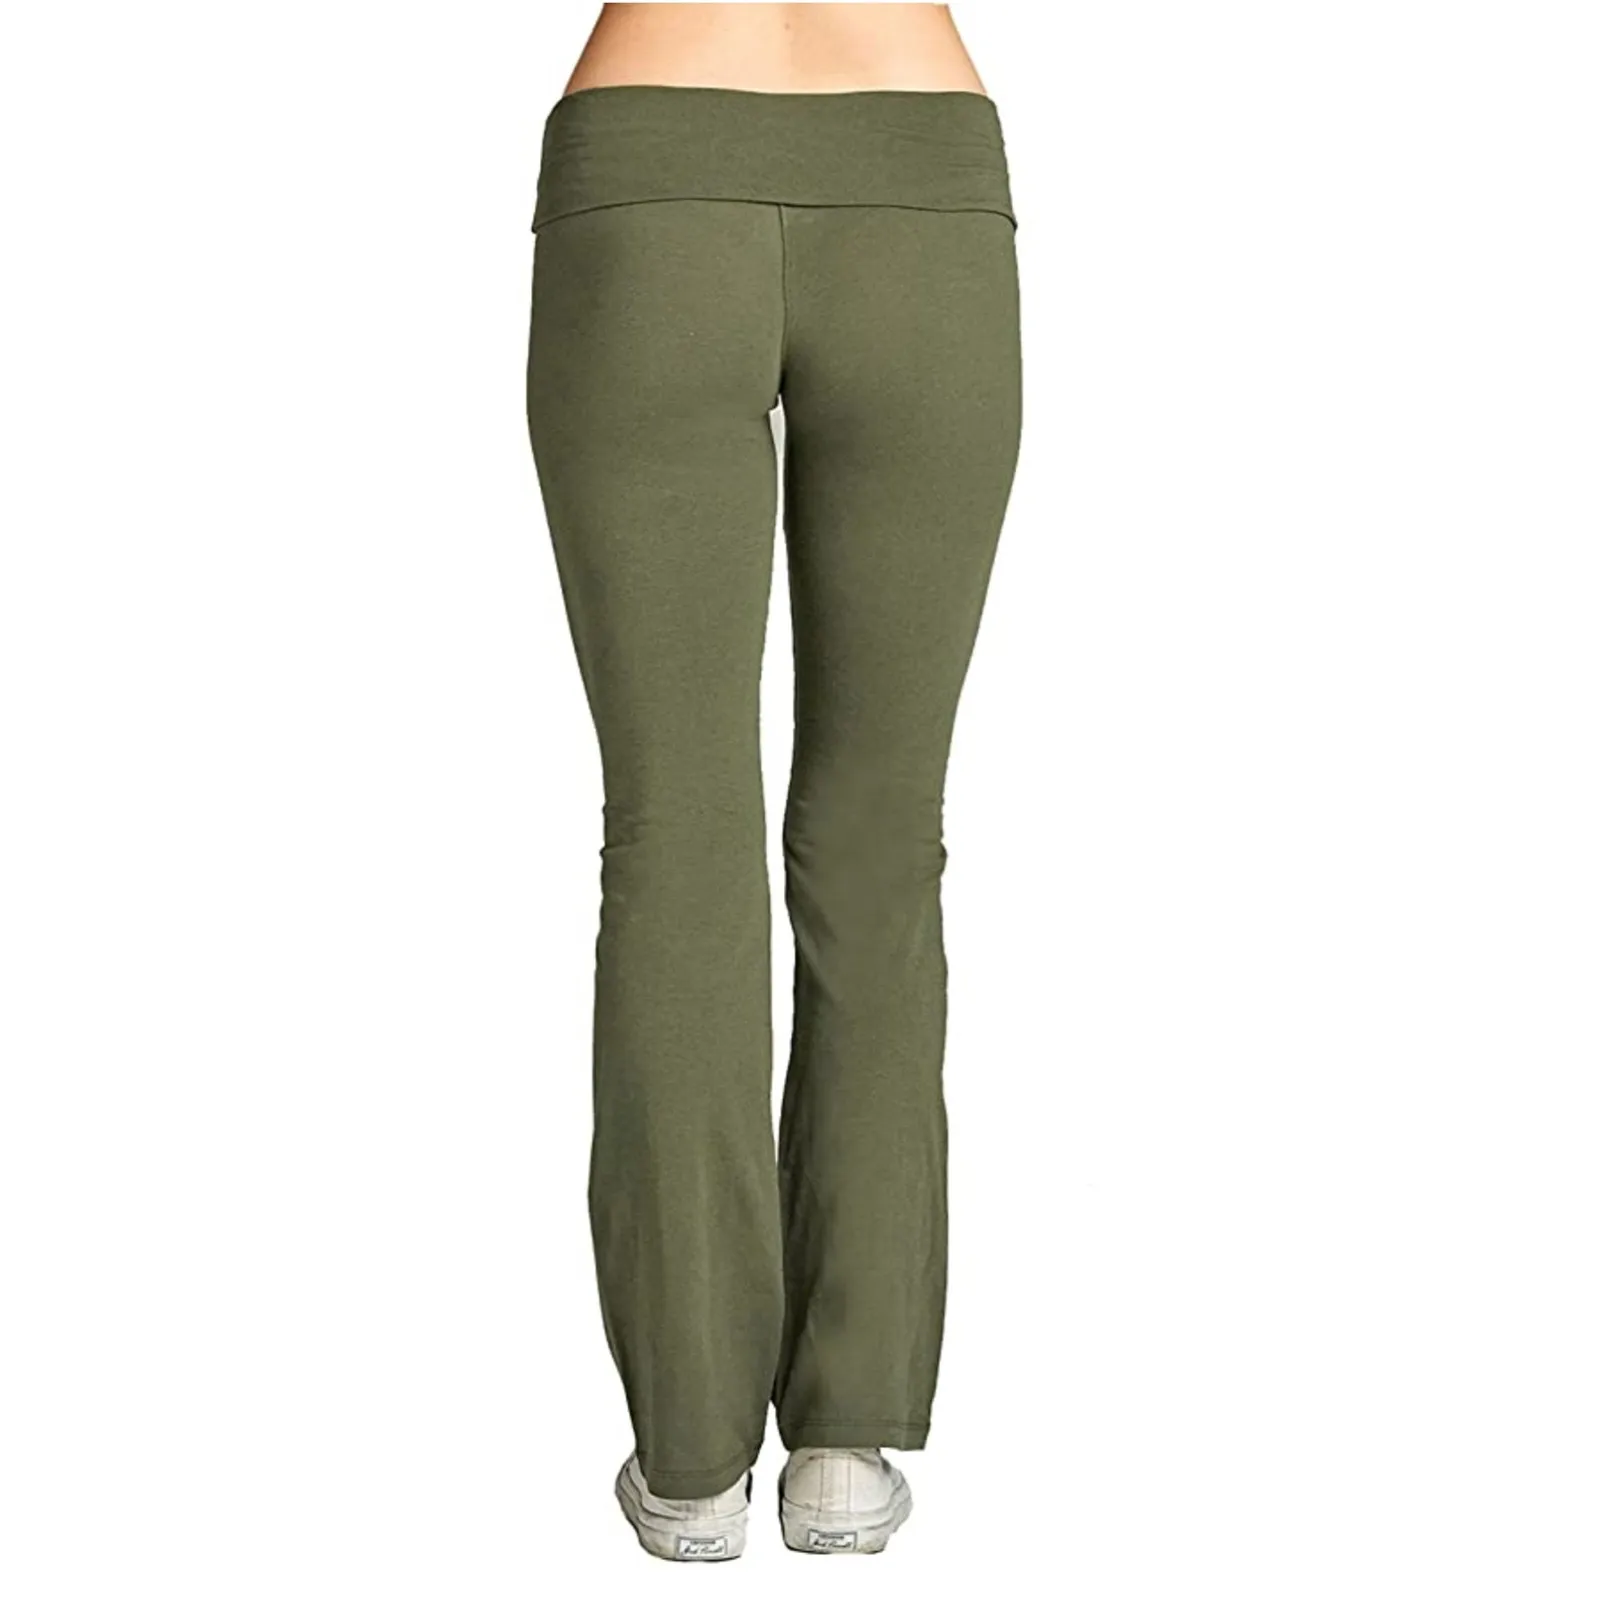 Kadın Streç Yoga Pantolon Katı Yüksek Bel Yoga Tayt Dans Spor Bayan Koşu Spor Pantolon Gevşek Spor Giyim S-3XL Görüntü 3